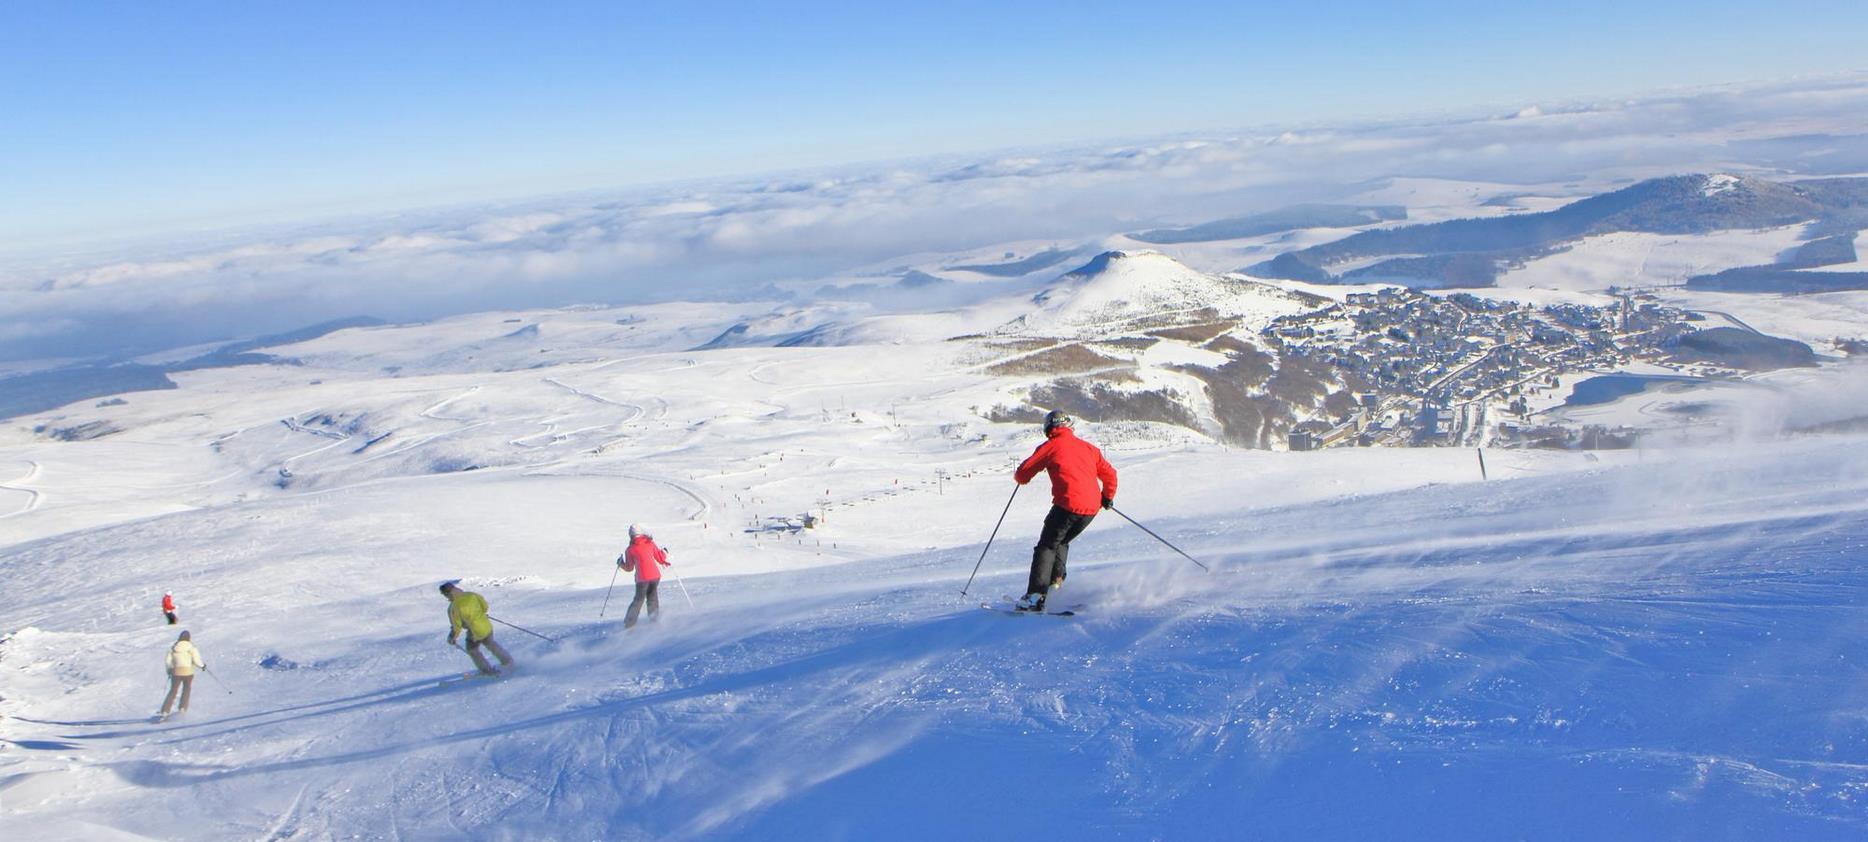 Super Besse - descente à ski en famille sur les pistes de la station